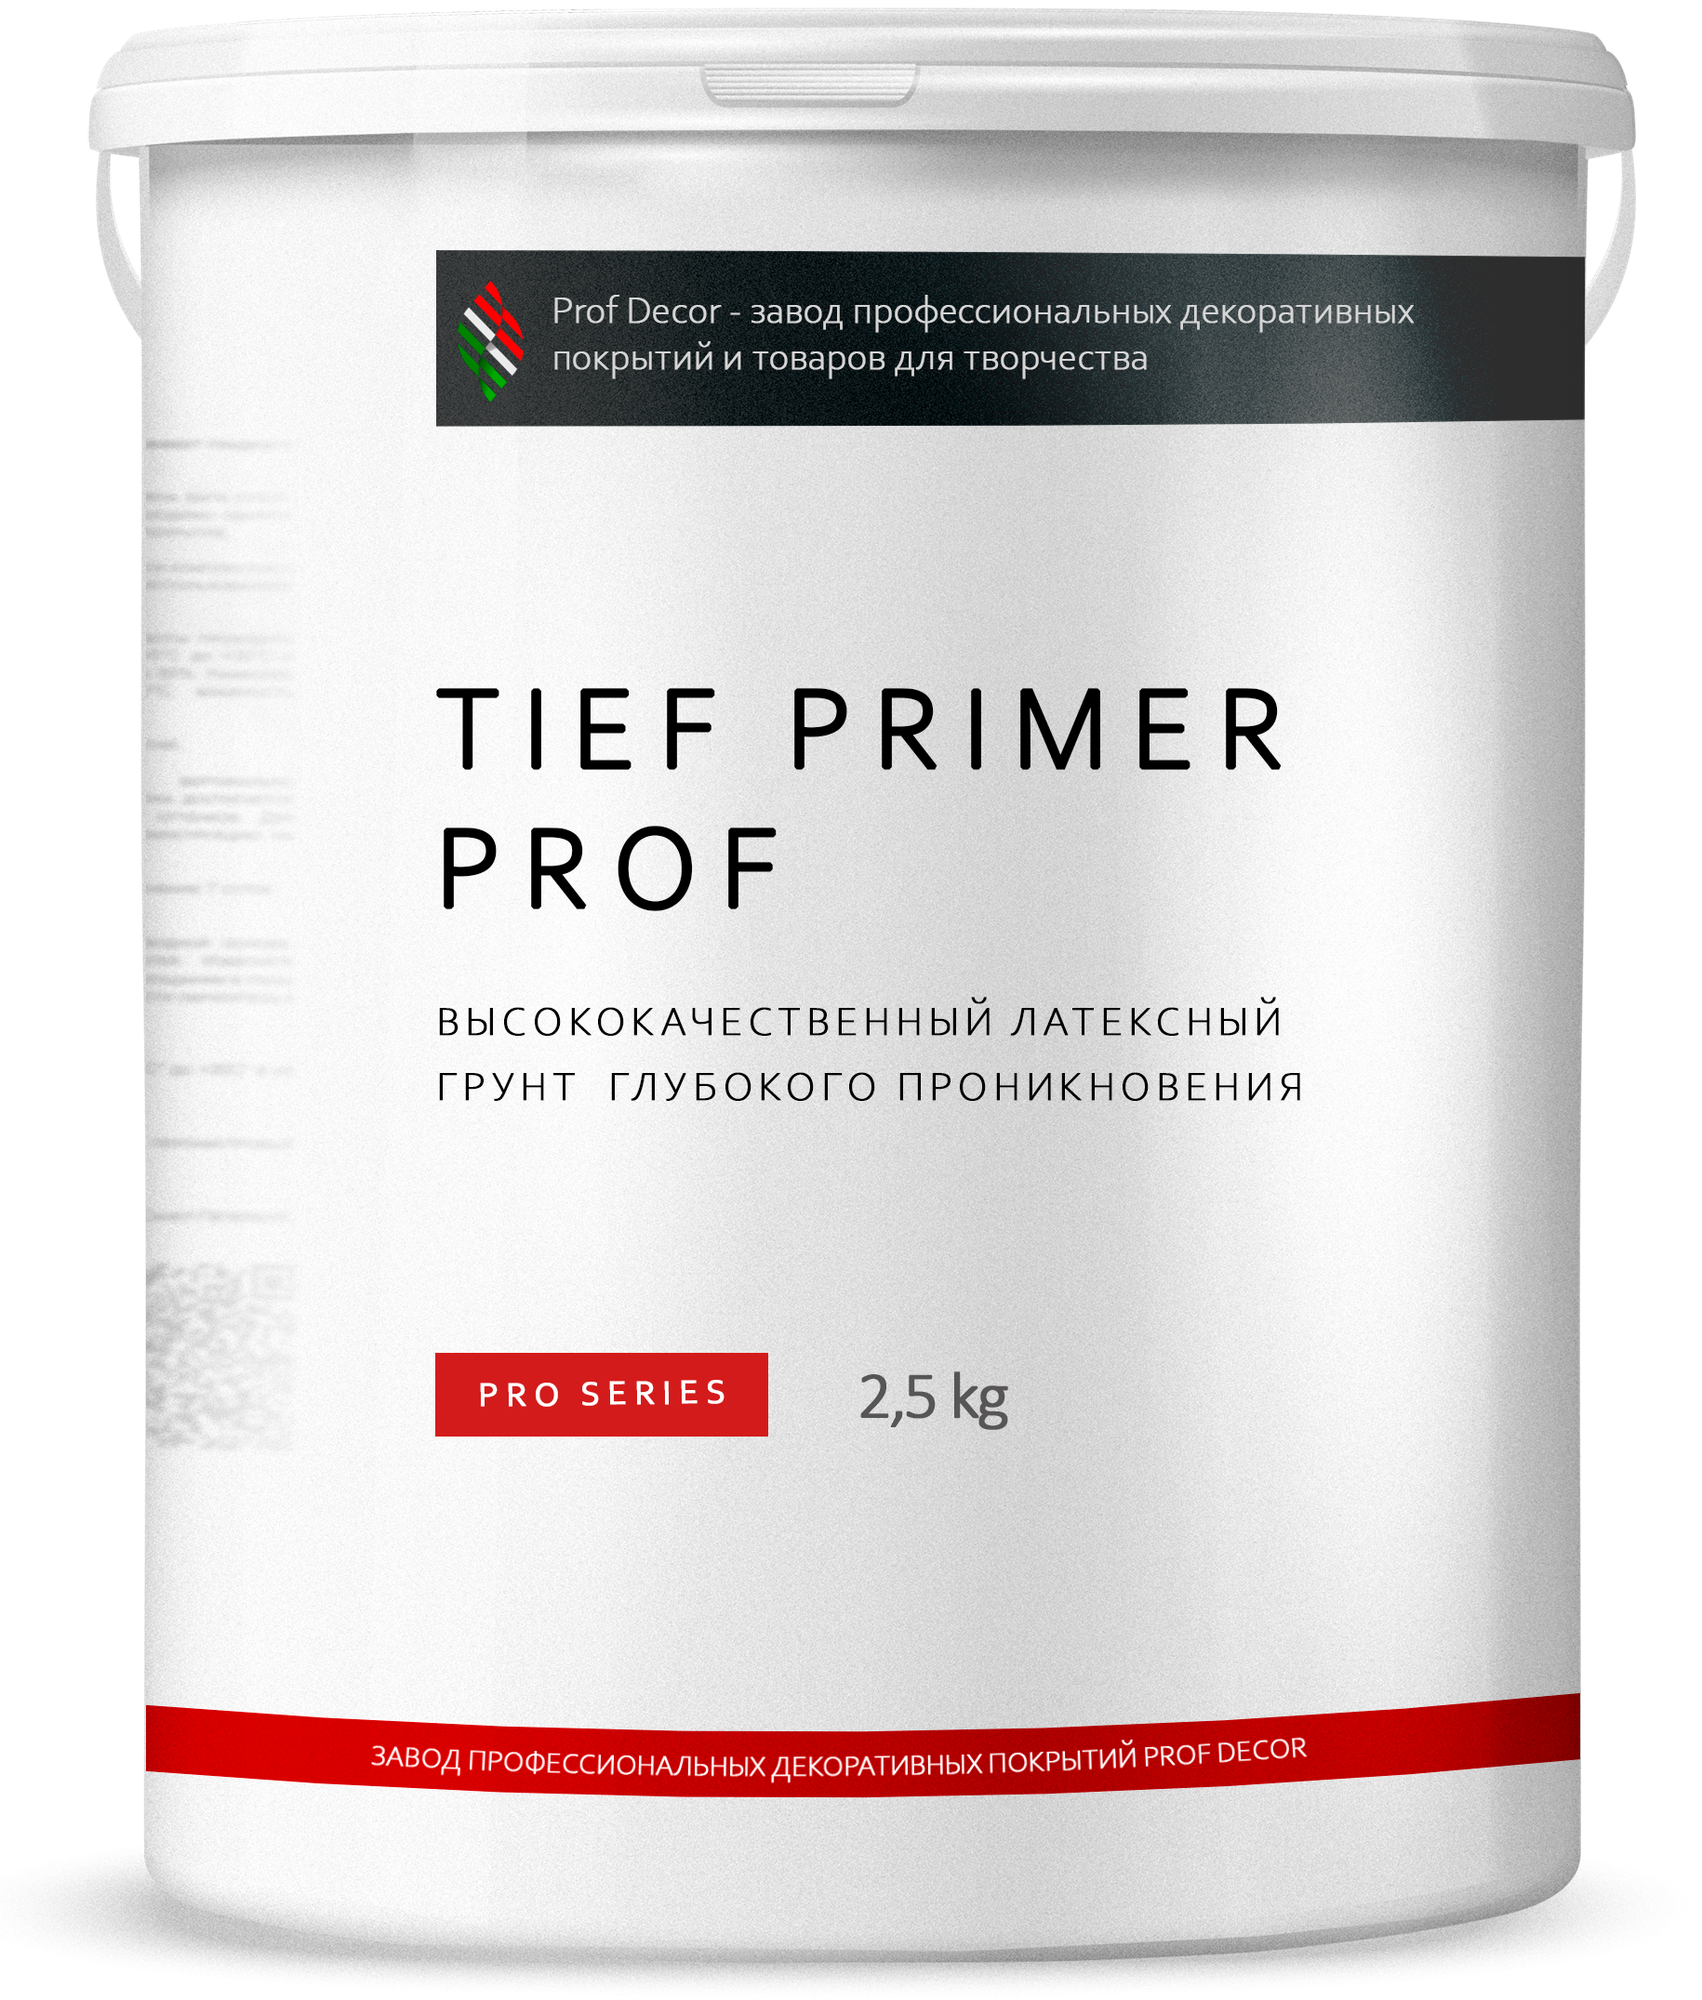 Высококачественный акриловый грунт Prof Decor Tiefprimer Prof - 2,5 литра